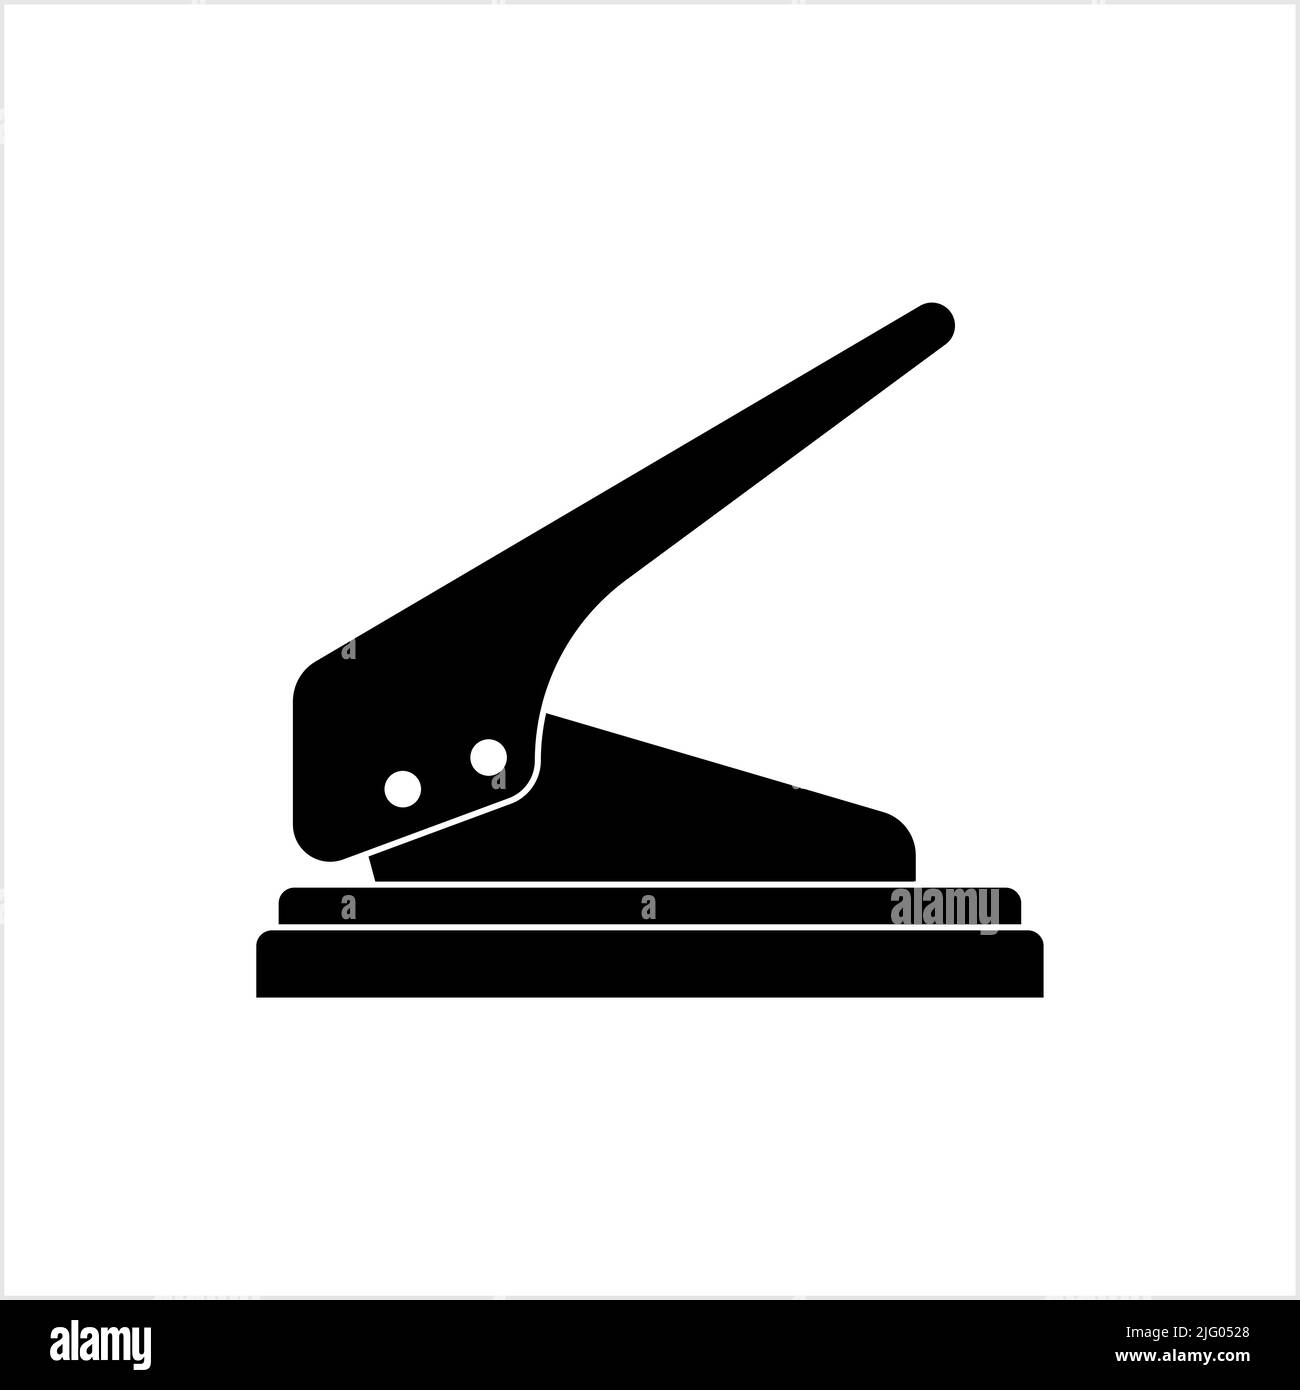 Perforadora de papel - Iconos gratis de construcción y herramientas